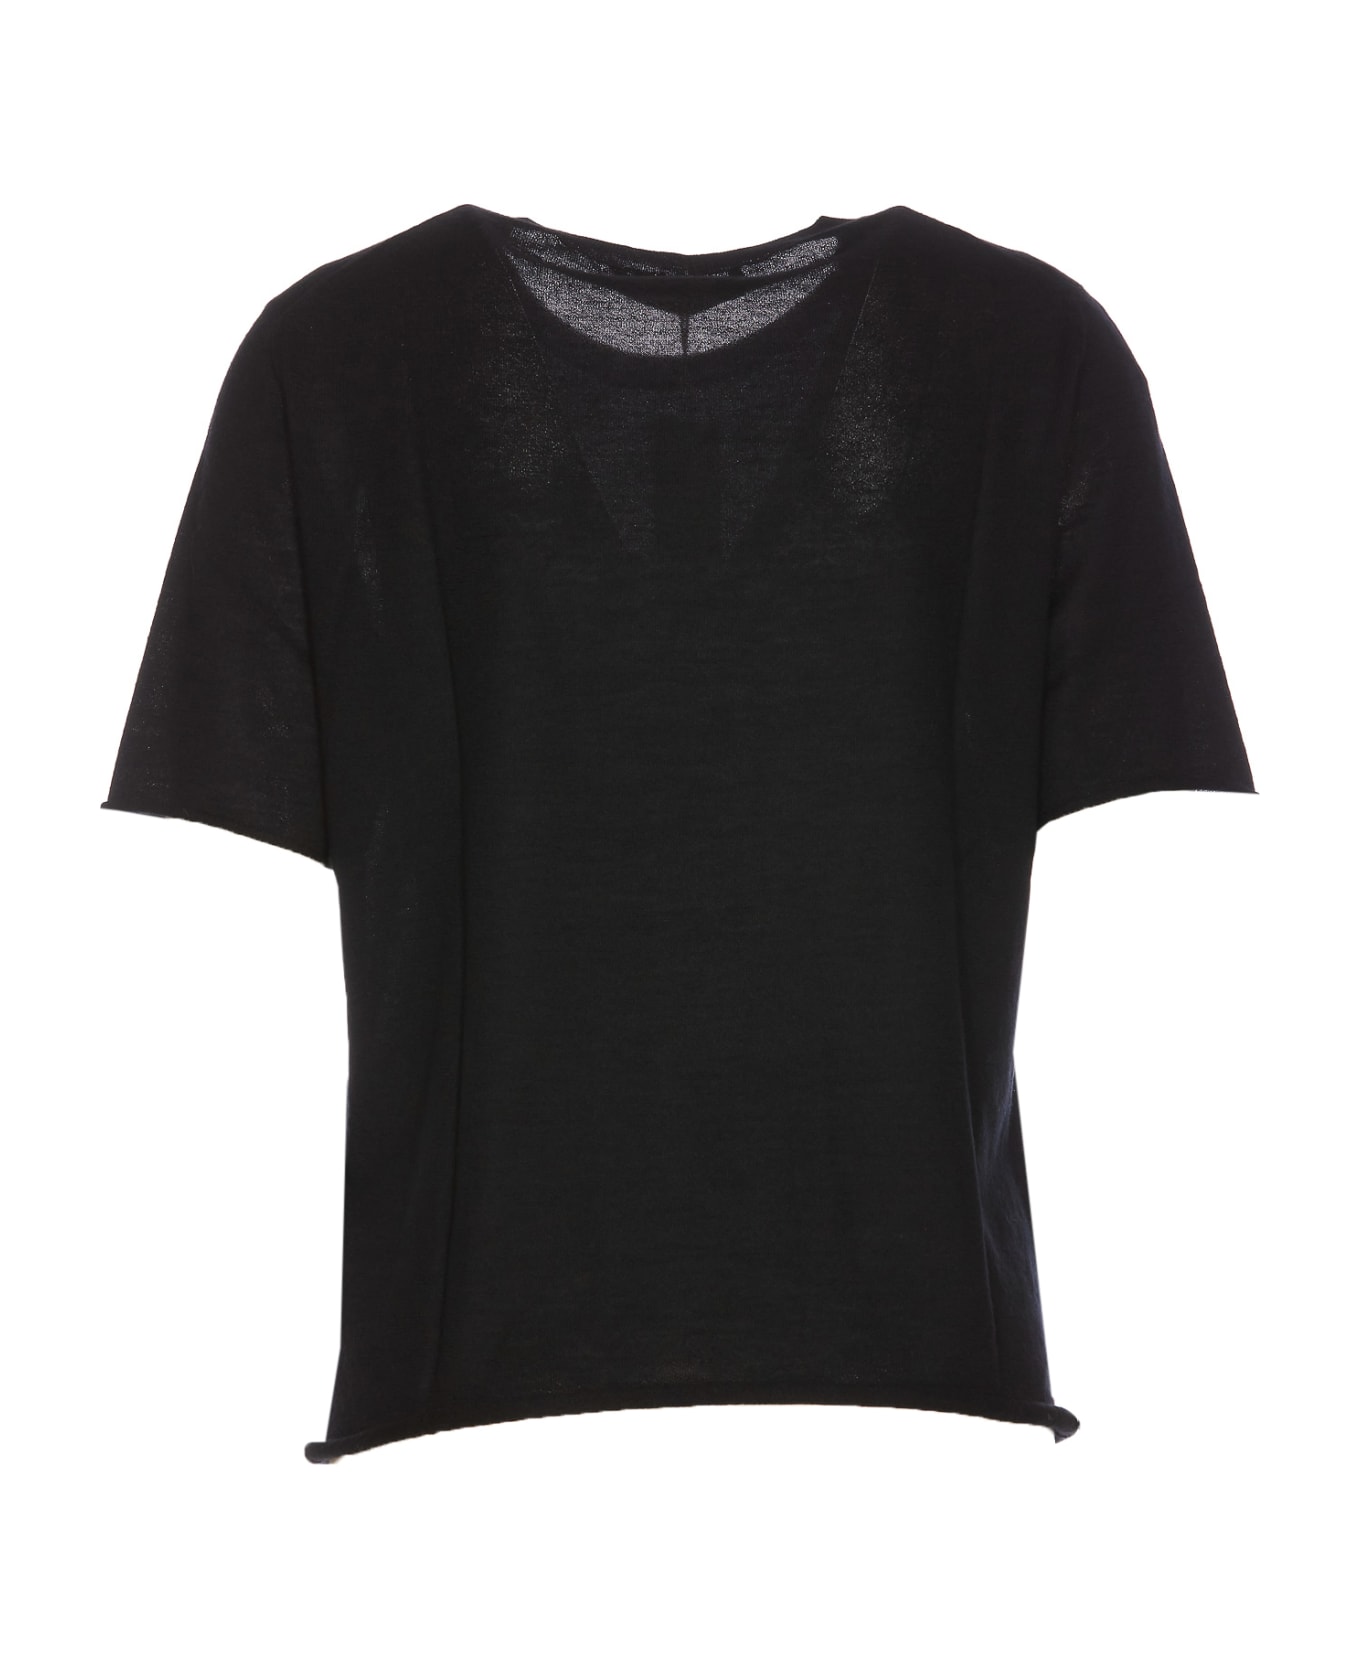 Lisa Yang Ari T-shirt - Black Tシャツ